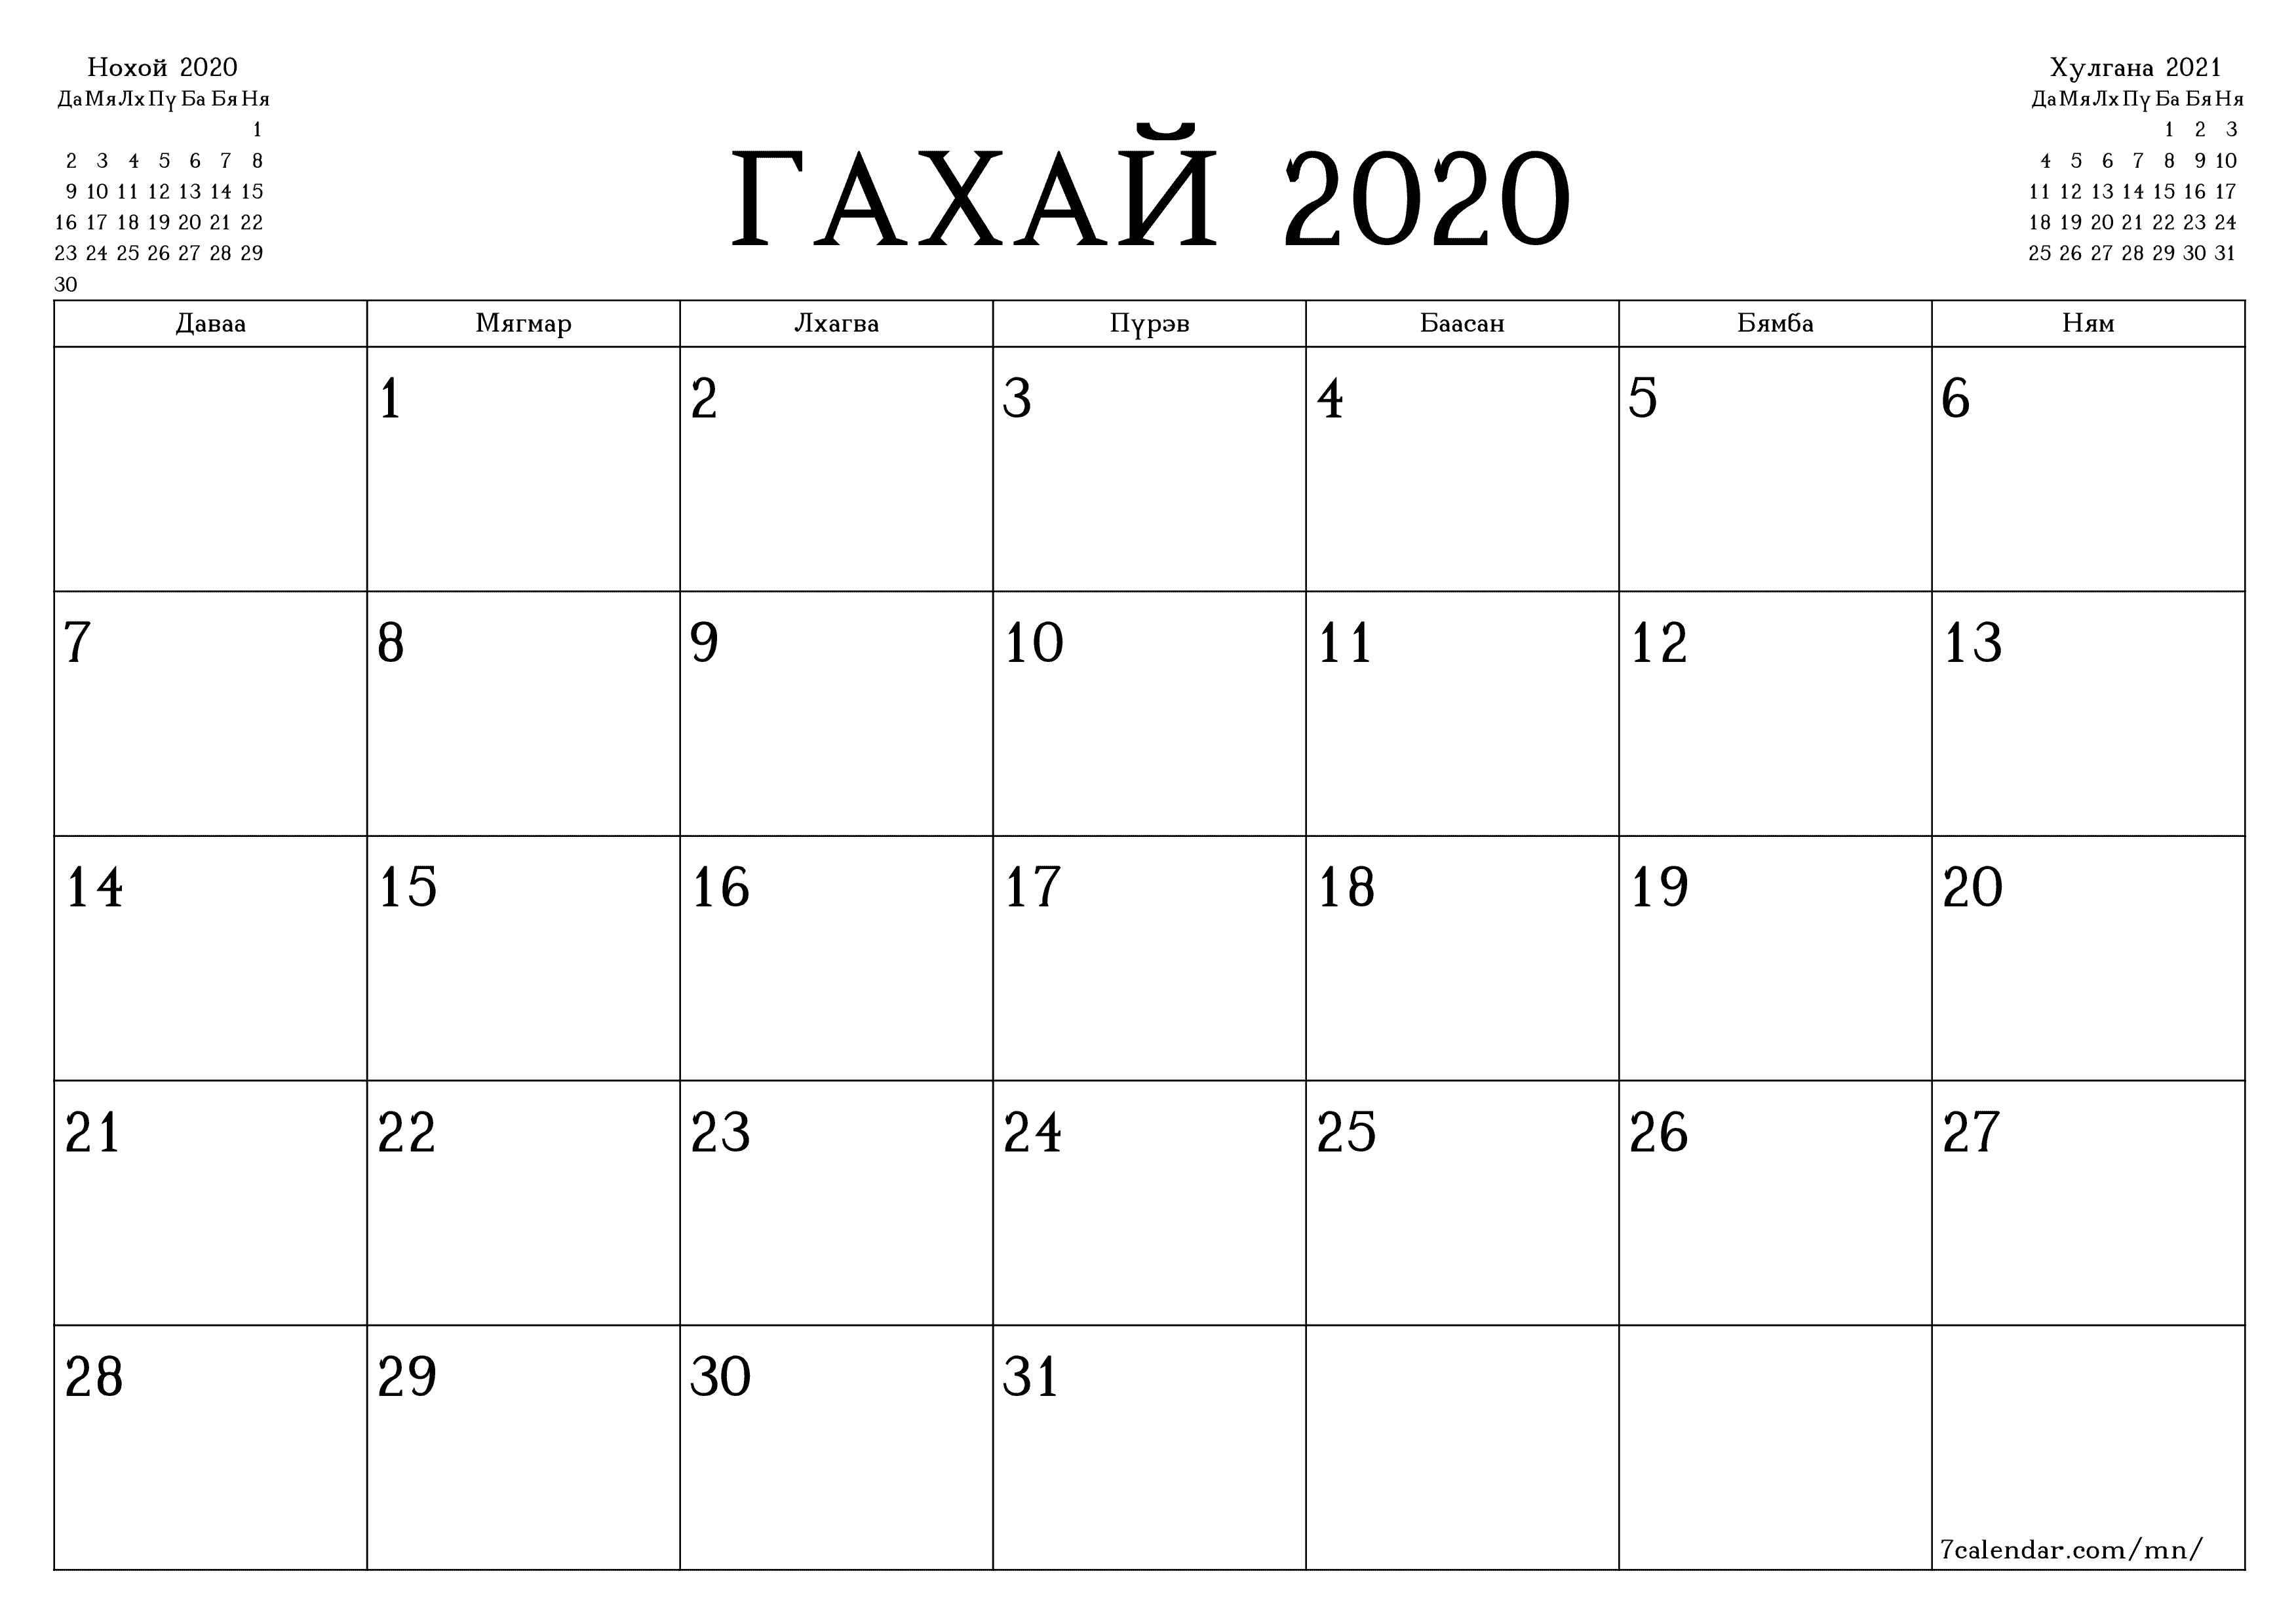 Гахай 2020 сарын сар бүрийн төлөвлөгөөг тэмдэглэлтэй хоосон байлгаж, PDF хэлбэрээр хадгалж, хэвлэ PNG Mongolian